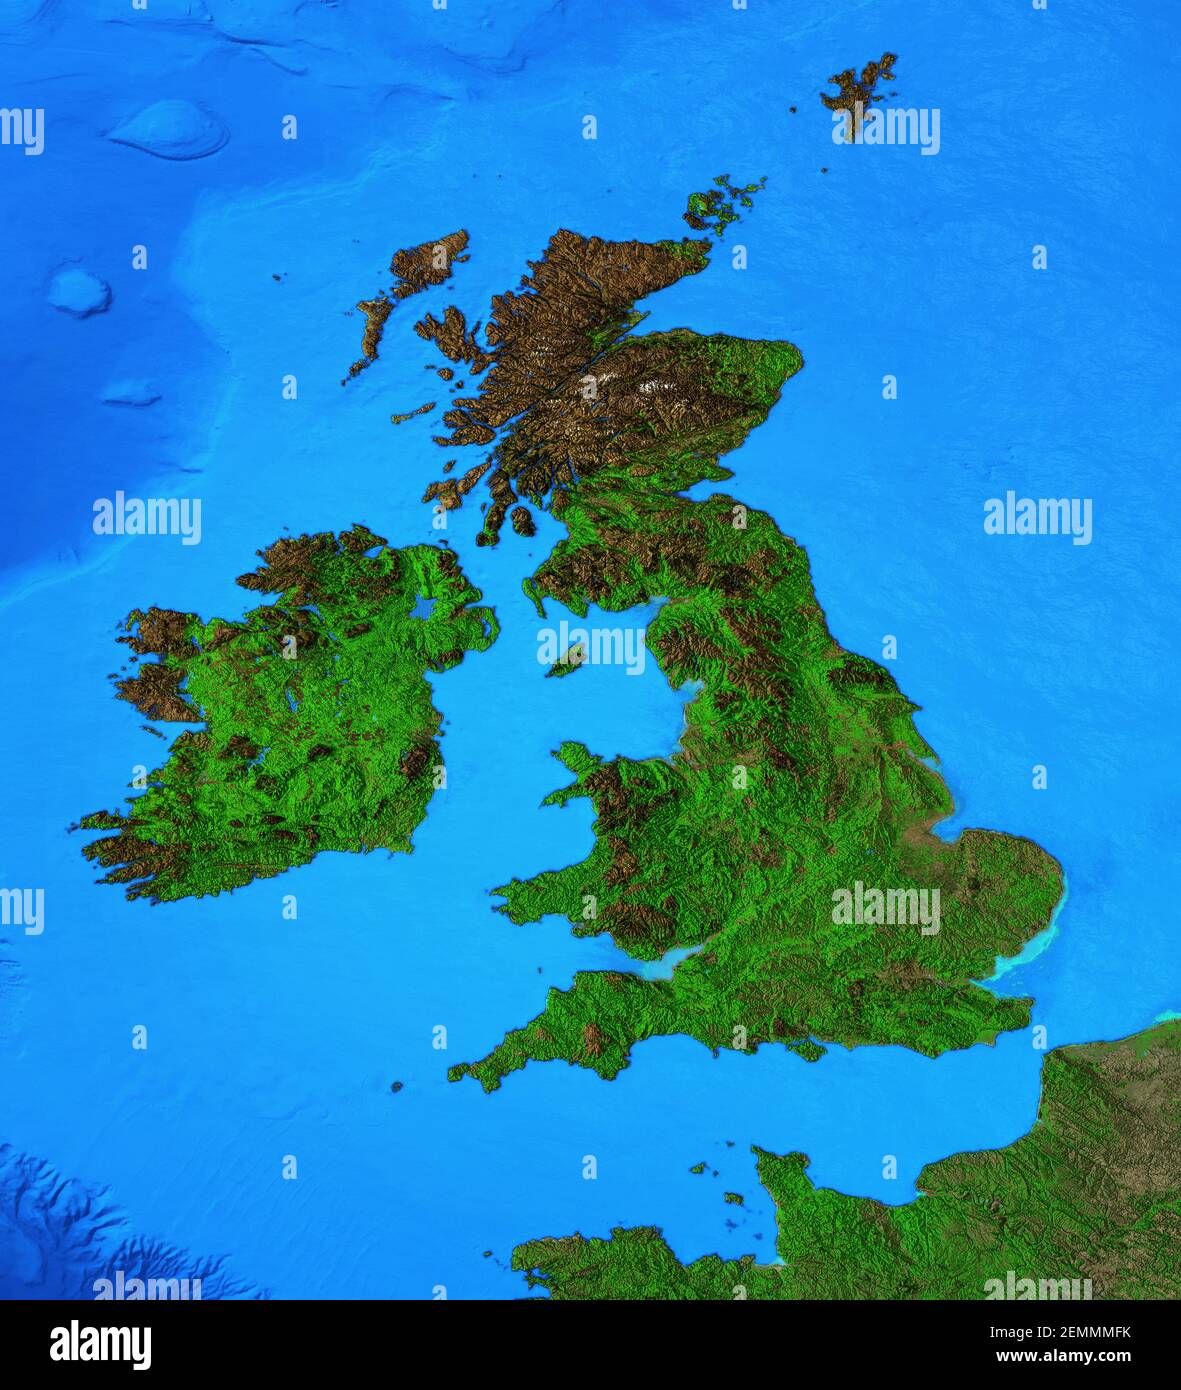 Mappa fisica di Inghilterra, Gran Bretagna e Irlanda. Vista in piano del pianeta Terra e delle sue forme - elementi arredati dalla NASA Foto Stock